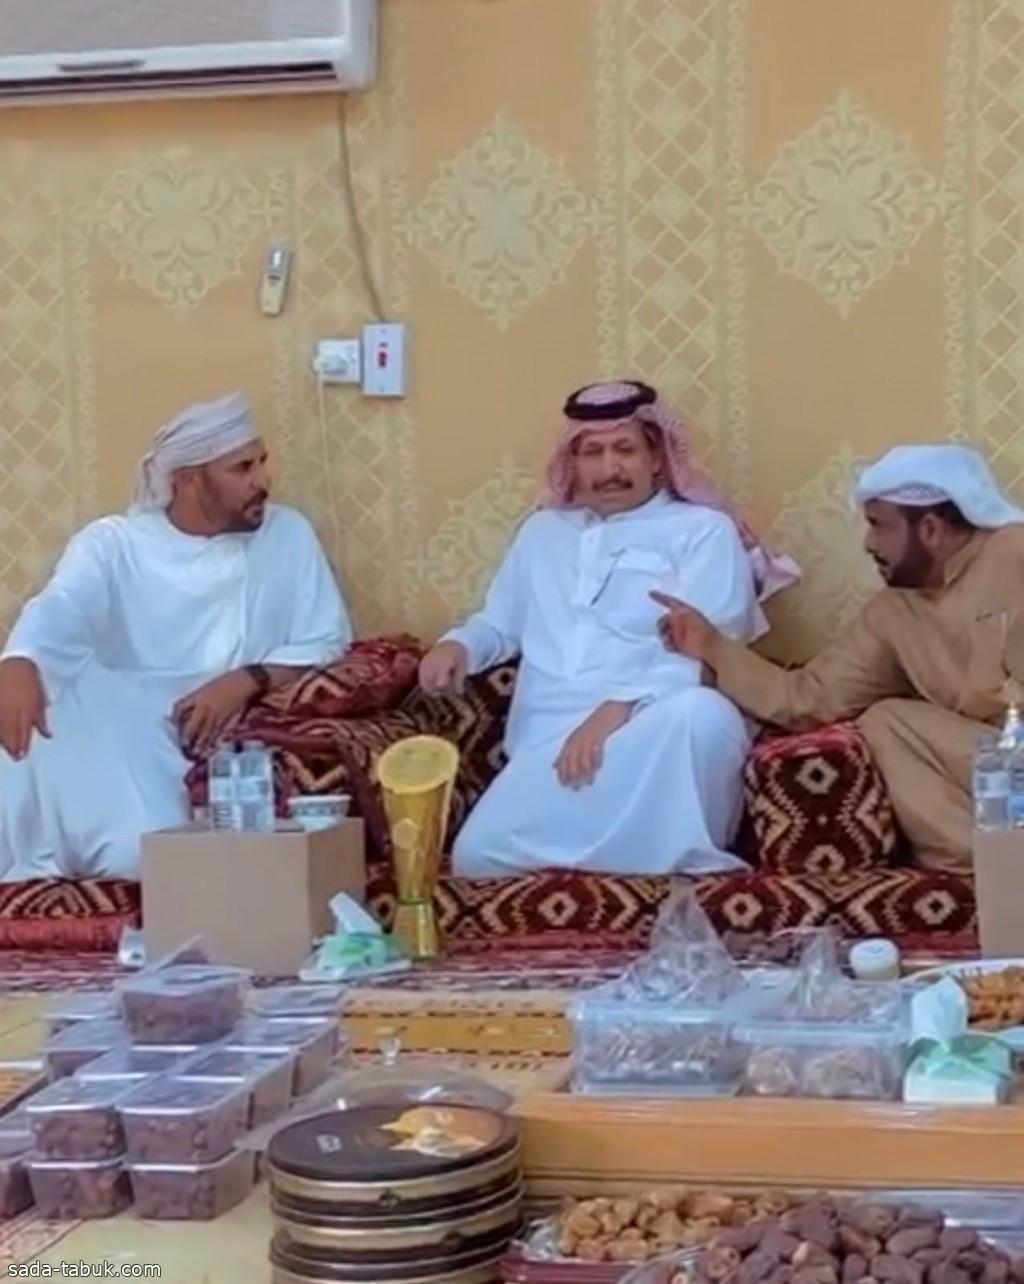 سمو الشيخ ذياب بن سيف آل نهيان في ضيافة رجل الأعمال عبدالرحمن فهد المديني